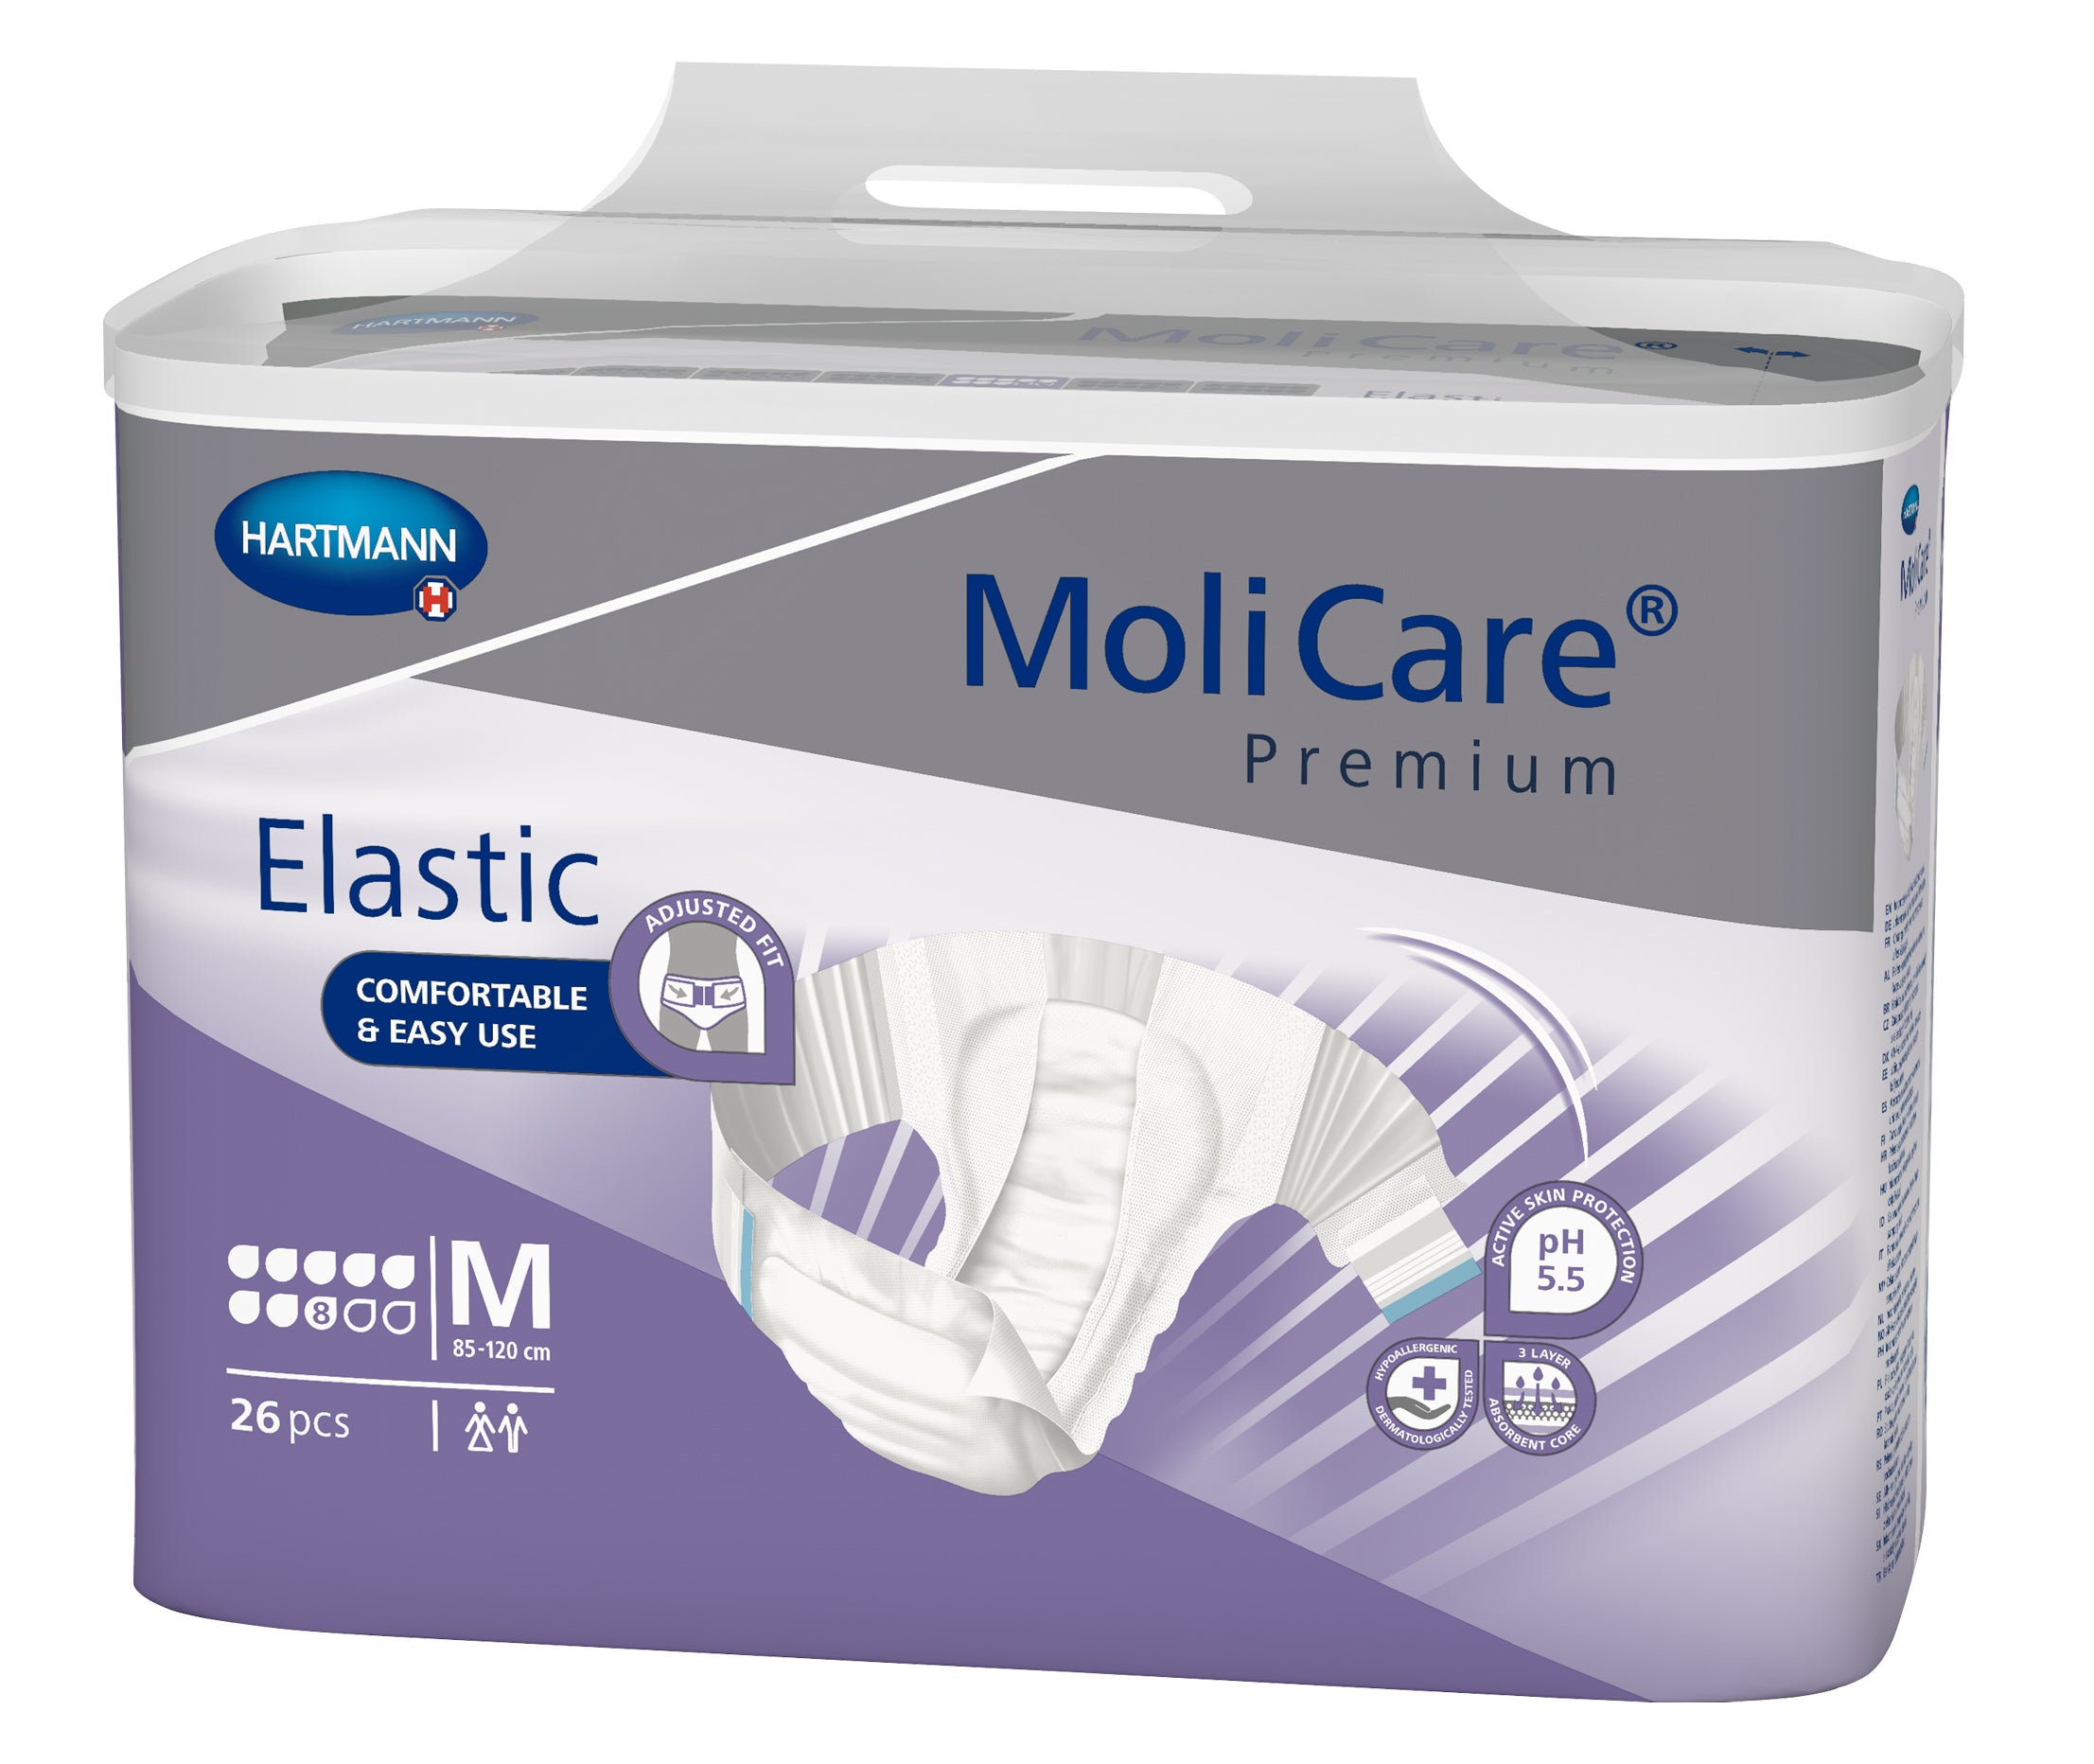 MoliCare Premium Elastic 8D Incontinence Briefs